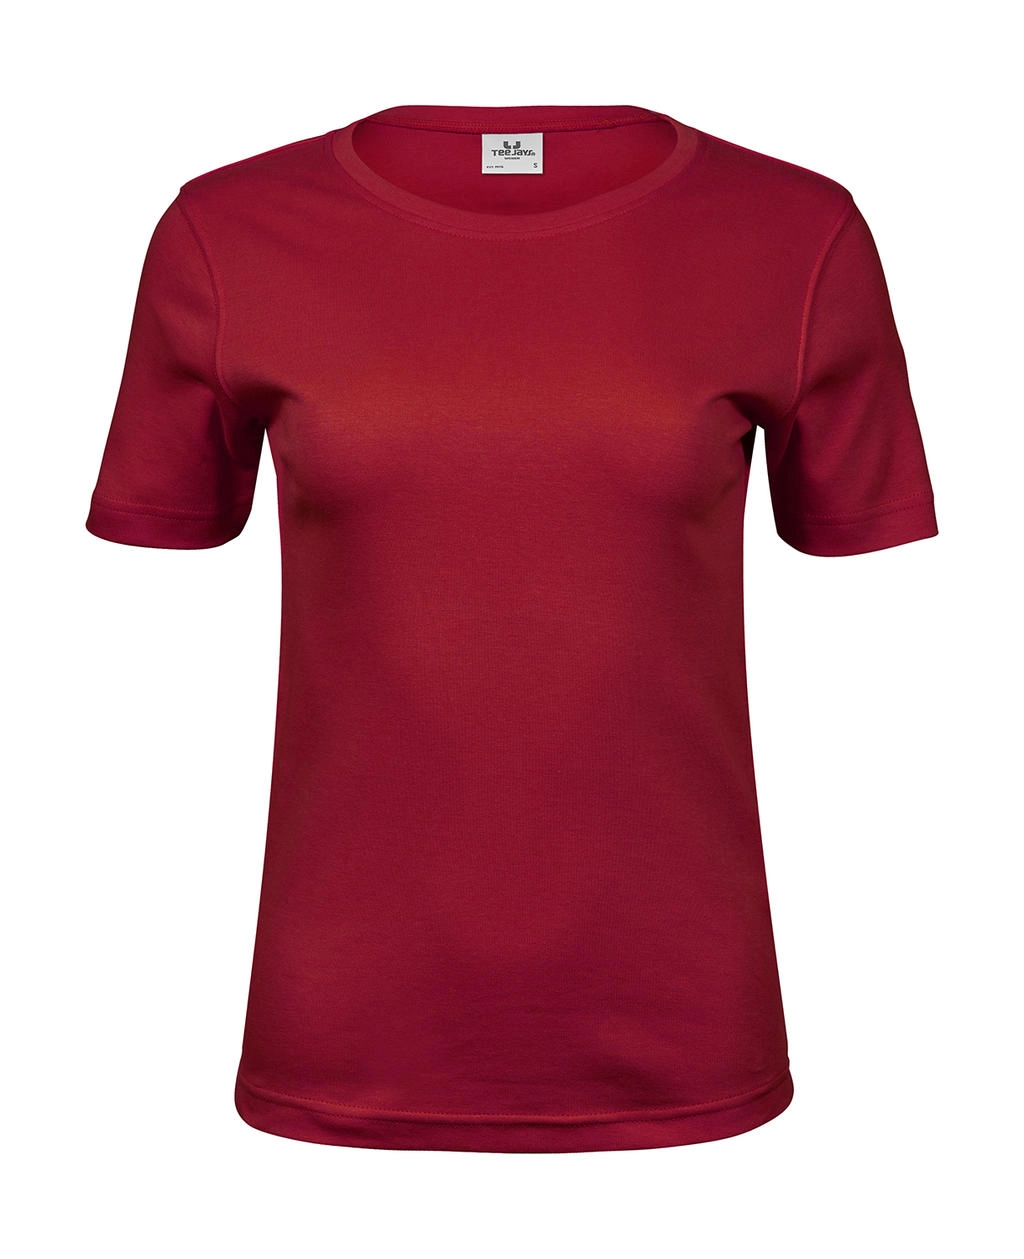 Ladies` Interlock T-Shirt zum Besticken und Bedrucken in der Farbe Deep Red mit Ihren Logo, Schriftzug oder Motiv.